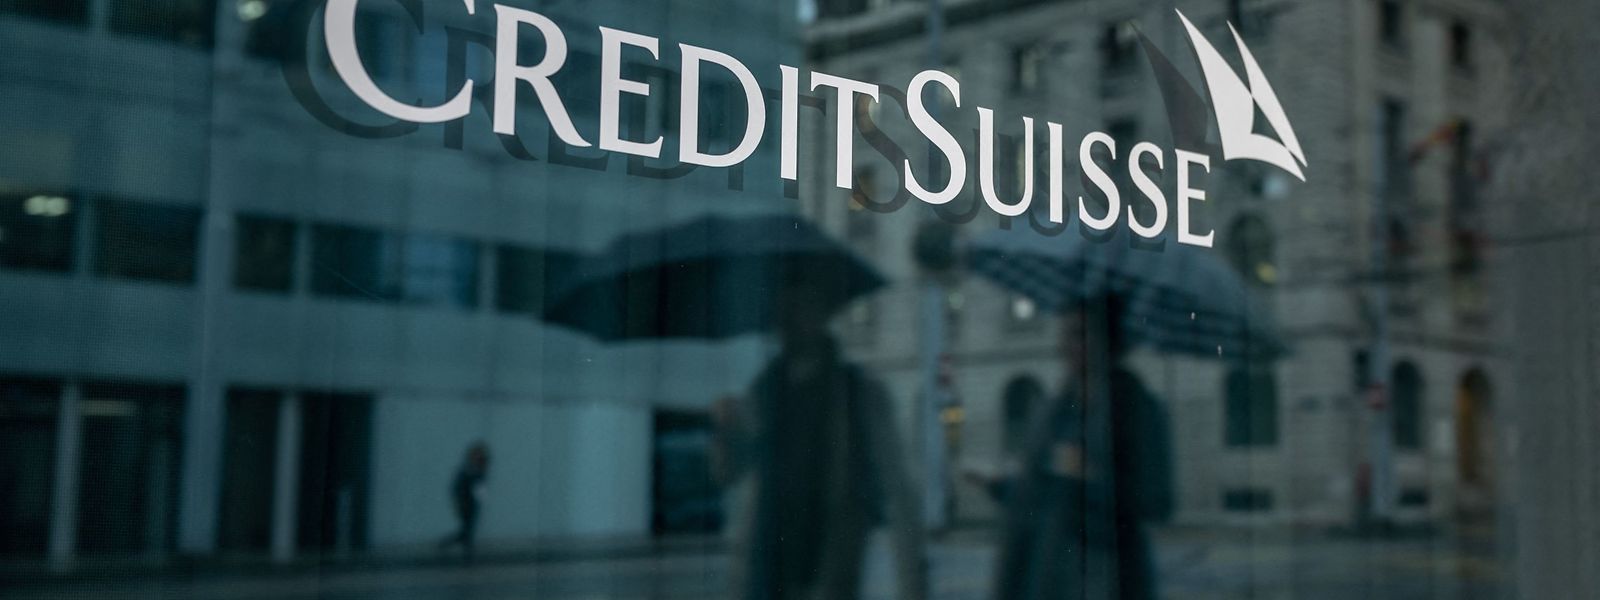 Die Credit Suisse wurde nicht abgewickelt, sondern im Hauruckverfahren der UBS angegliedert. 